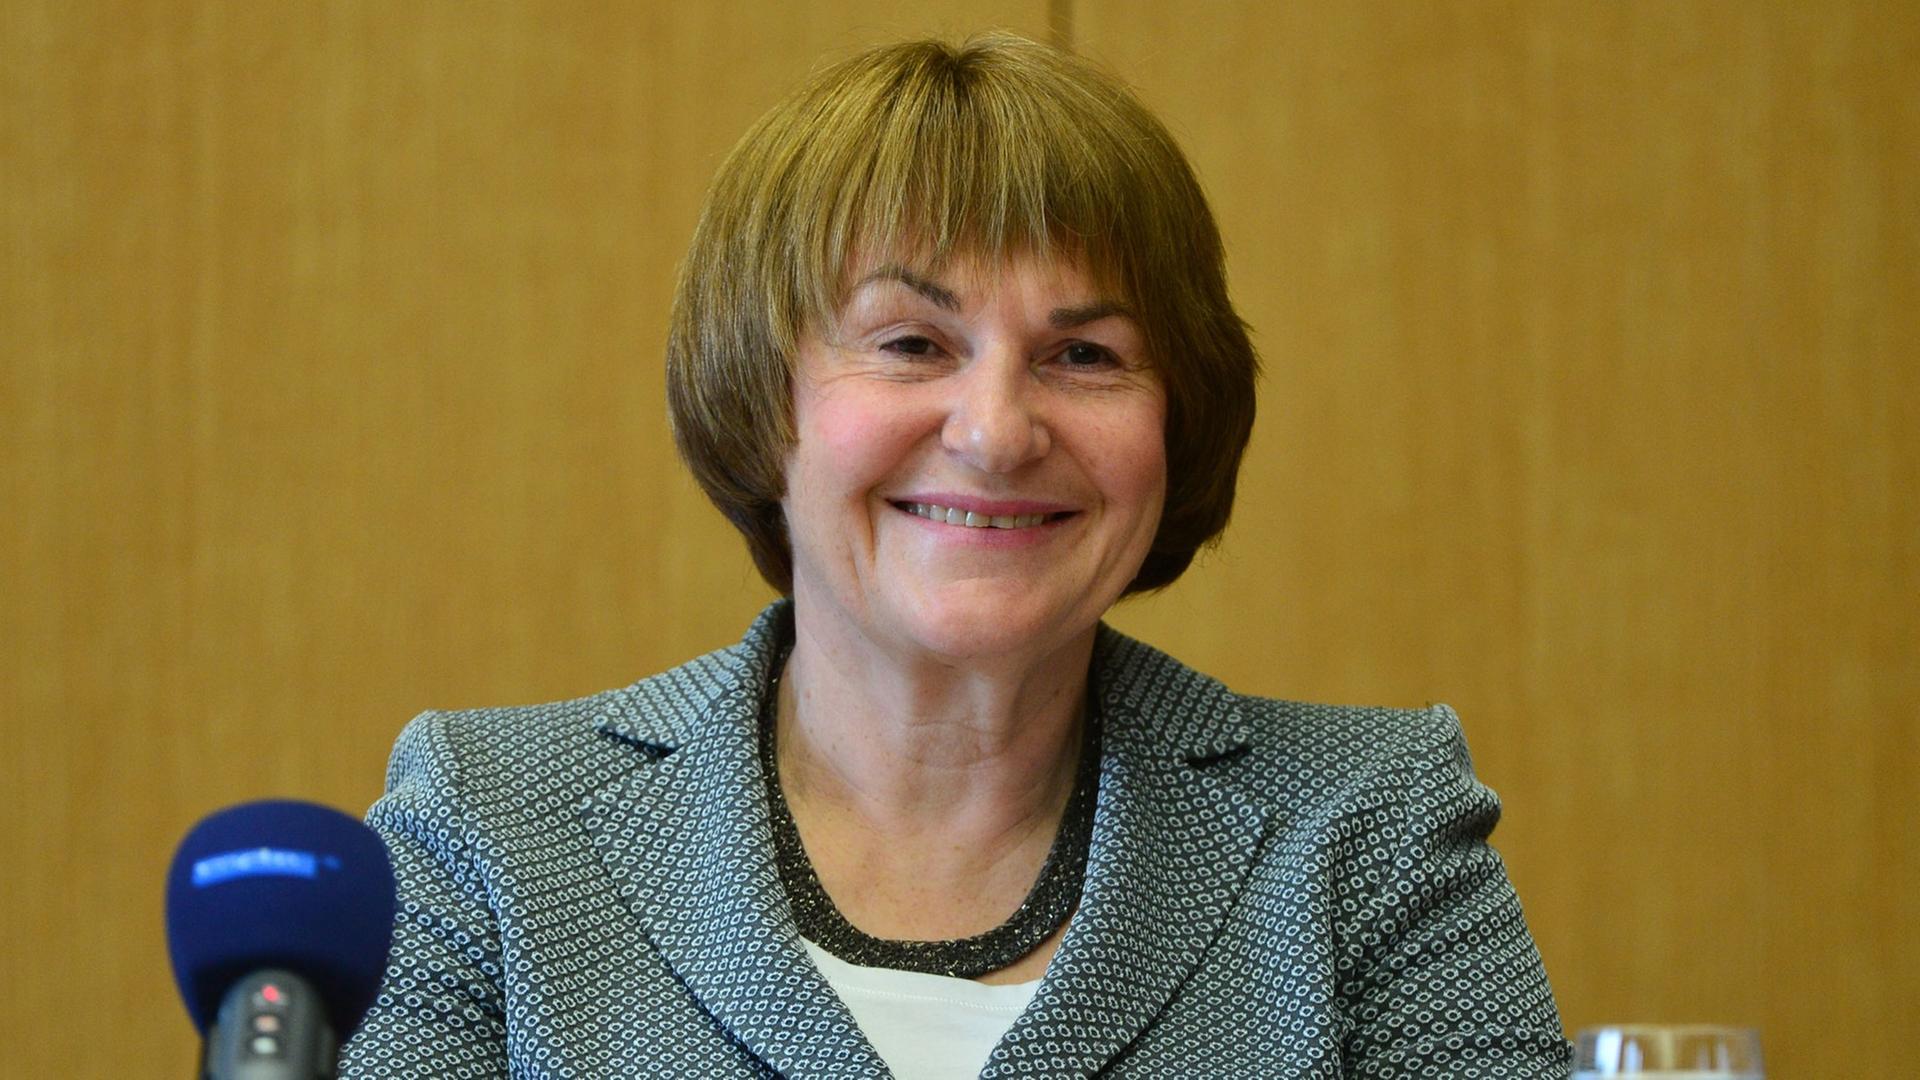 Die Präsidentin des Bundesarbeitsgerichts, Ingrid Schmidt